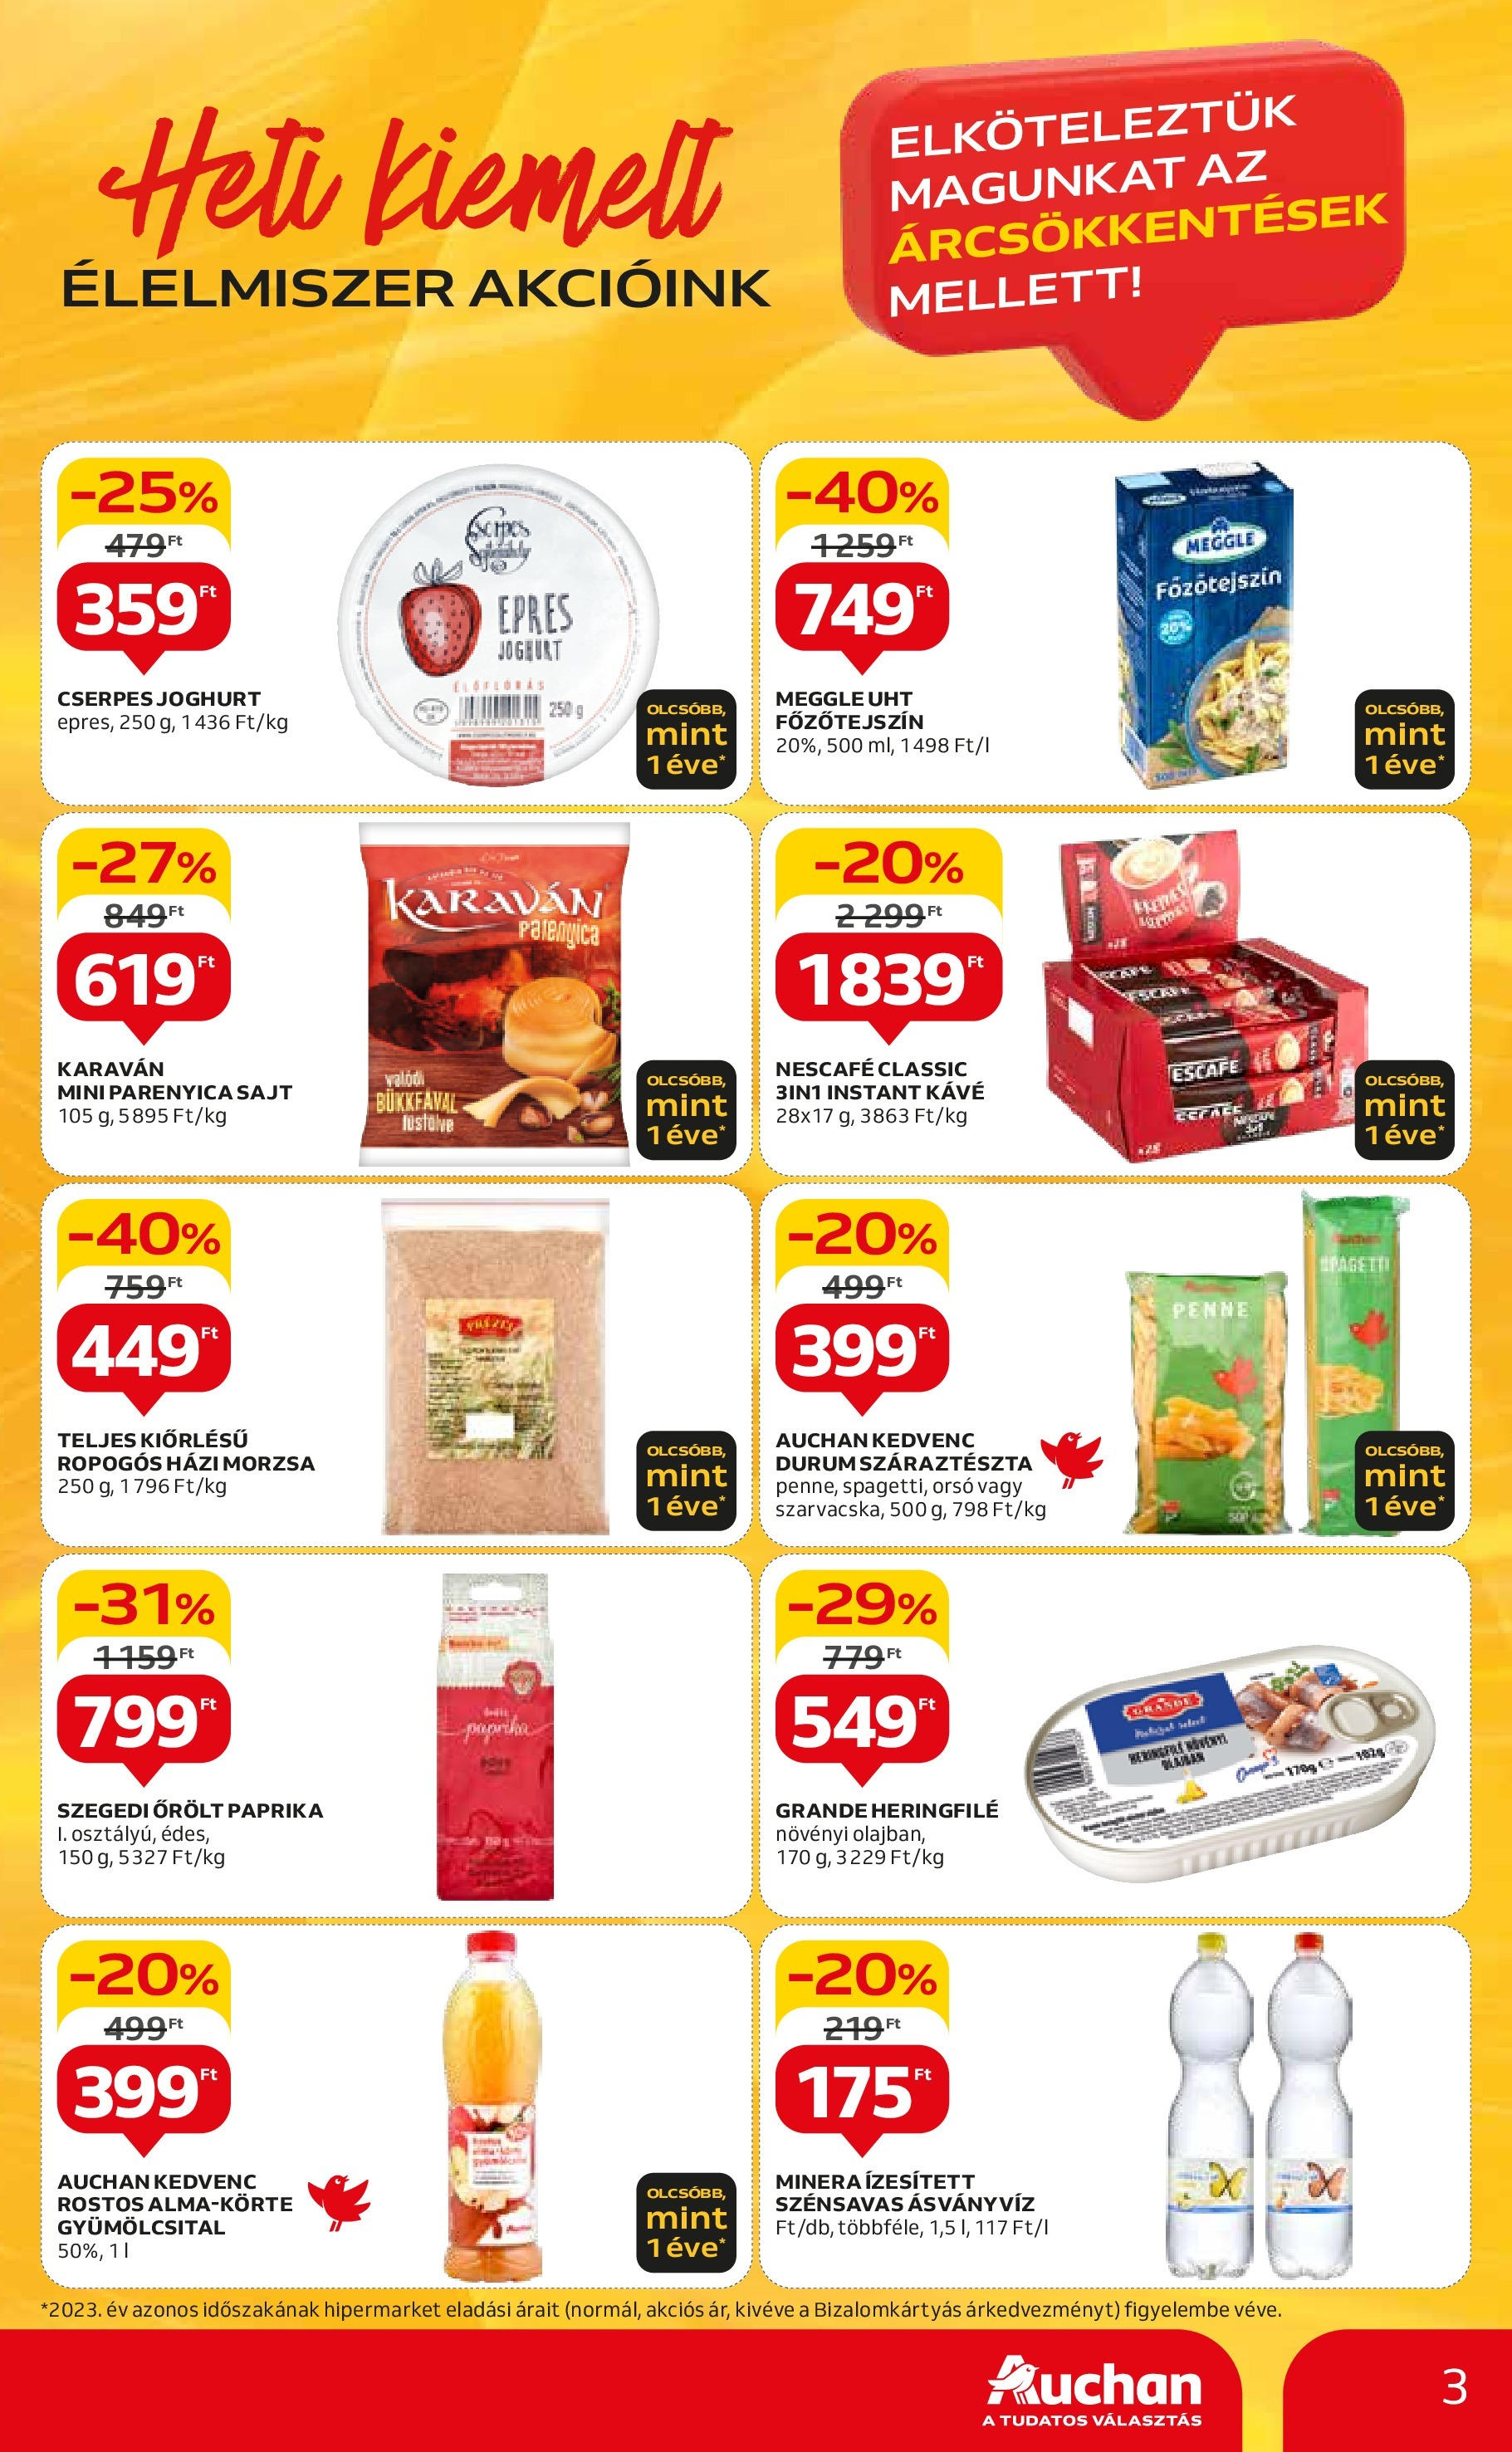 Auchan  Akciós újság - 2024.04.25. -tól/töl > akció, szórólap 🛍️ | Oldal: 3 | Termékek: Sajt, Joghurt, Parenyica sajt, Instant kávé